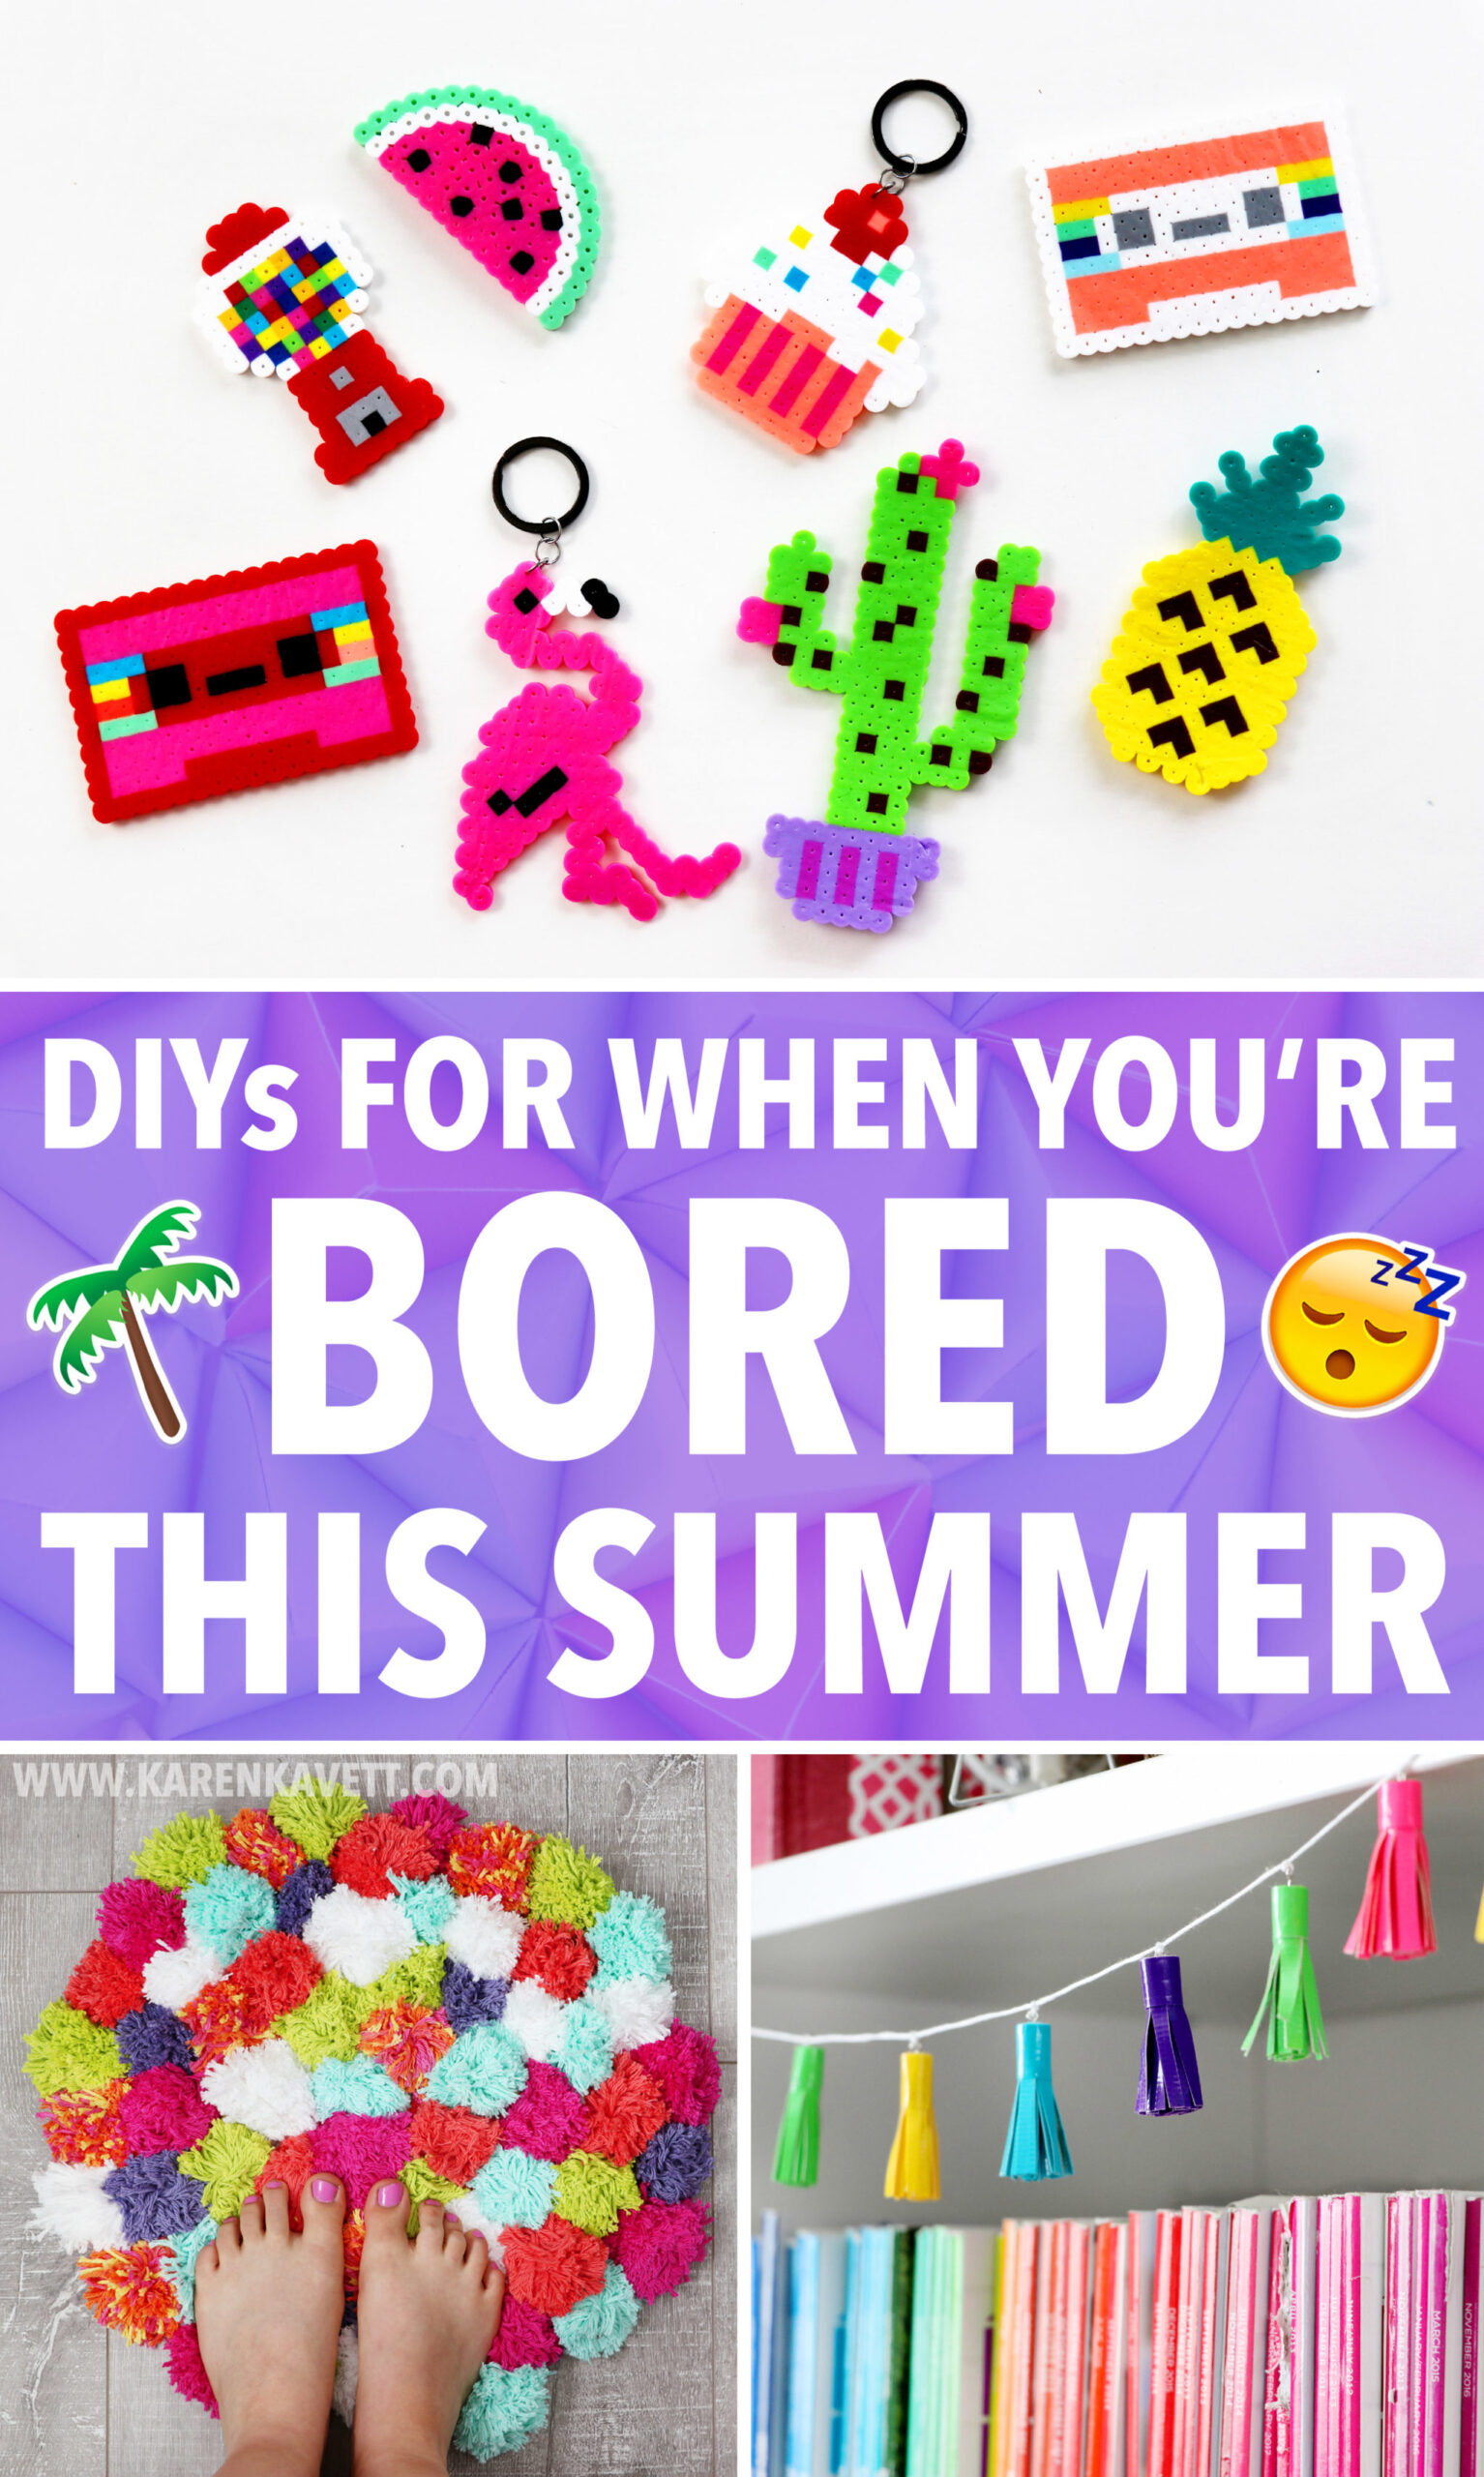 Easy Diy Ideas For When You Re Bored This Summer Karen Kavett